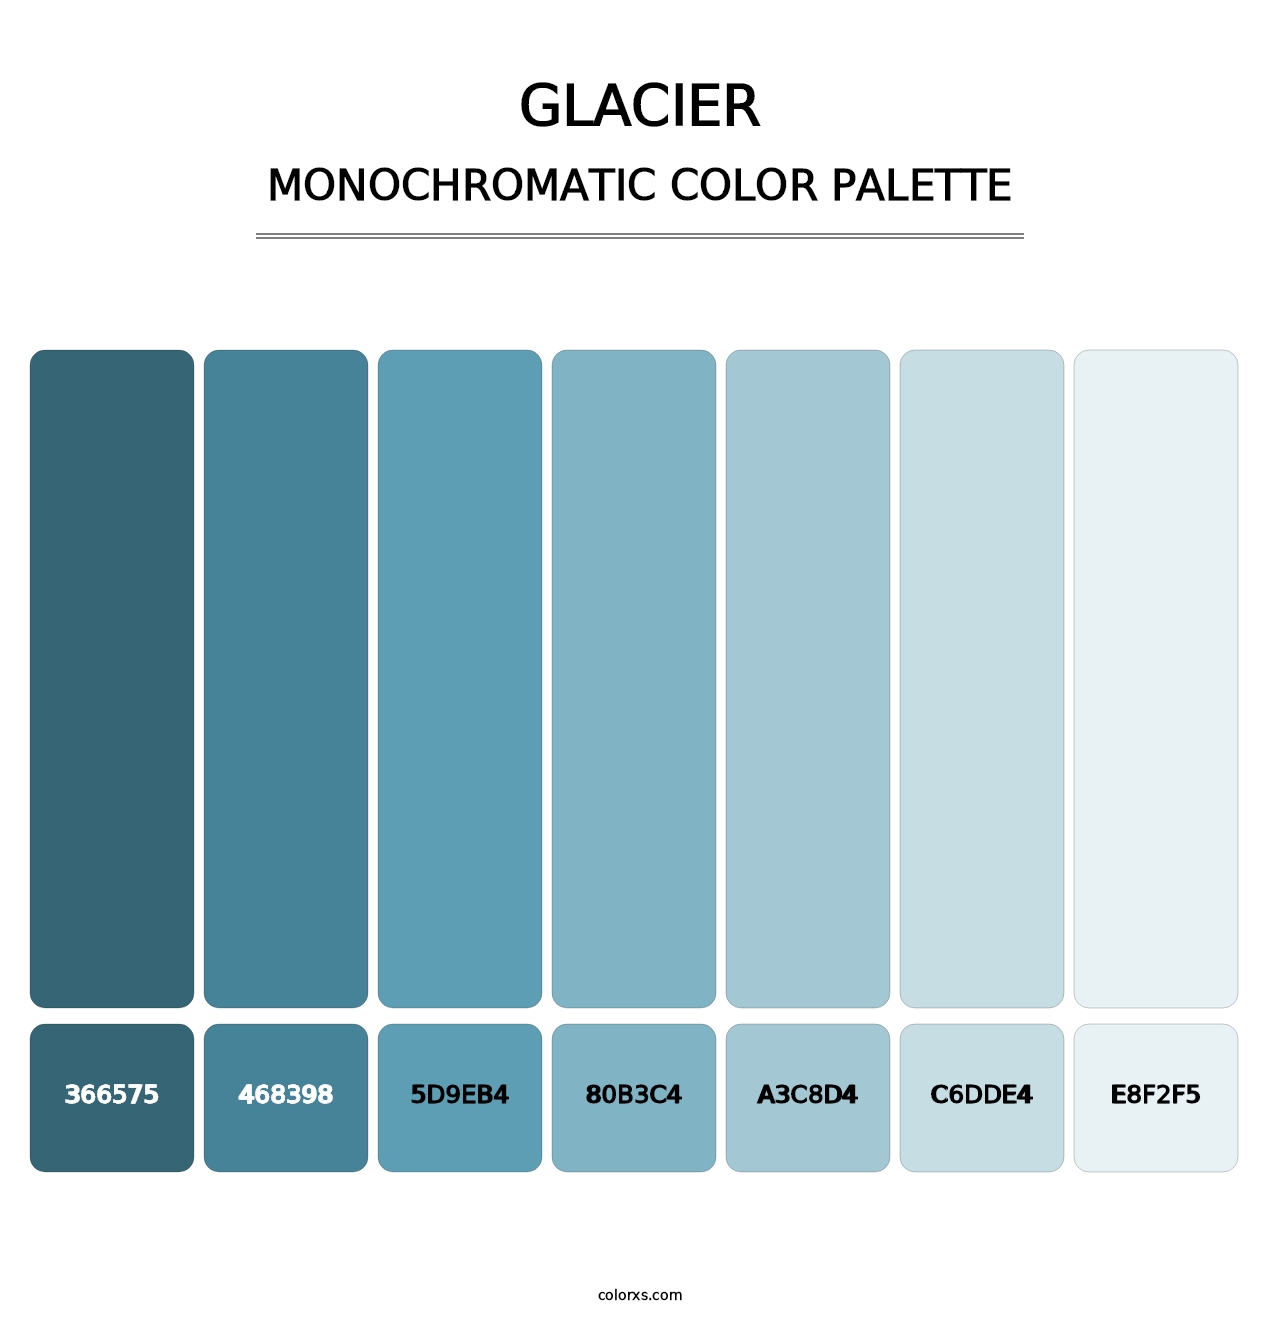 Glacier - Monochromatic Color Palette